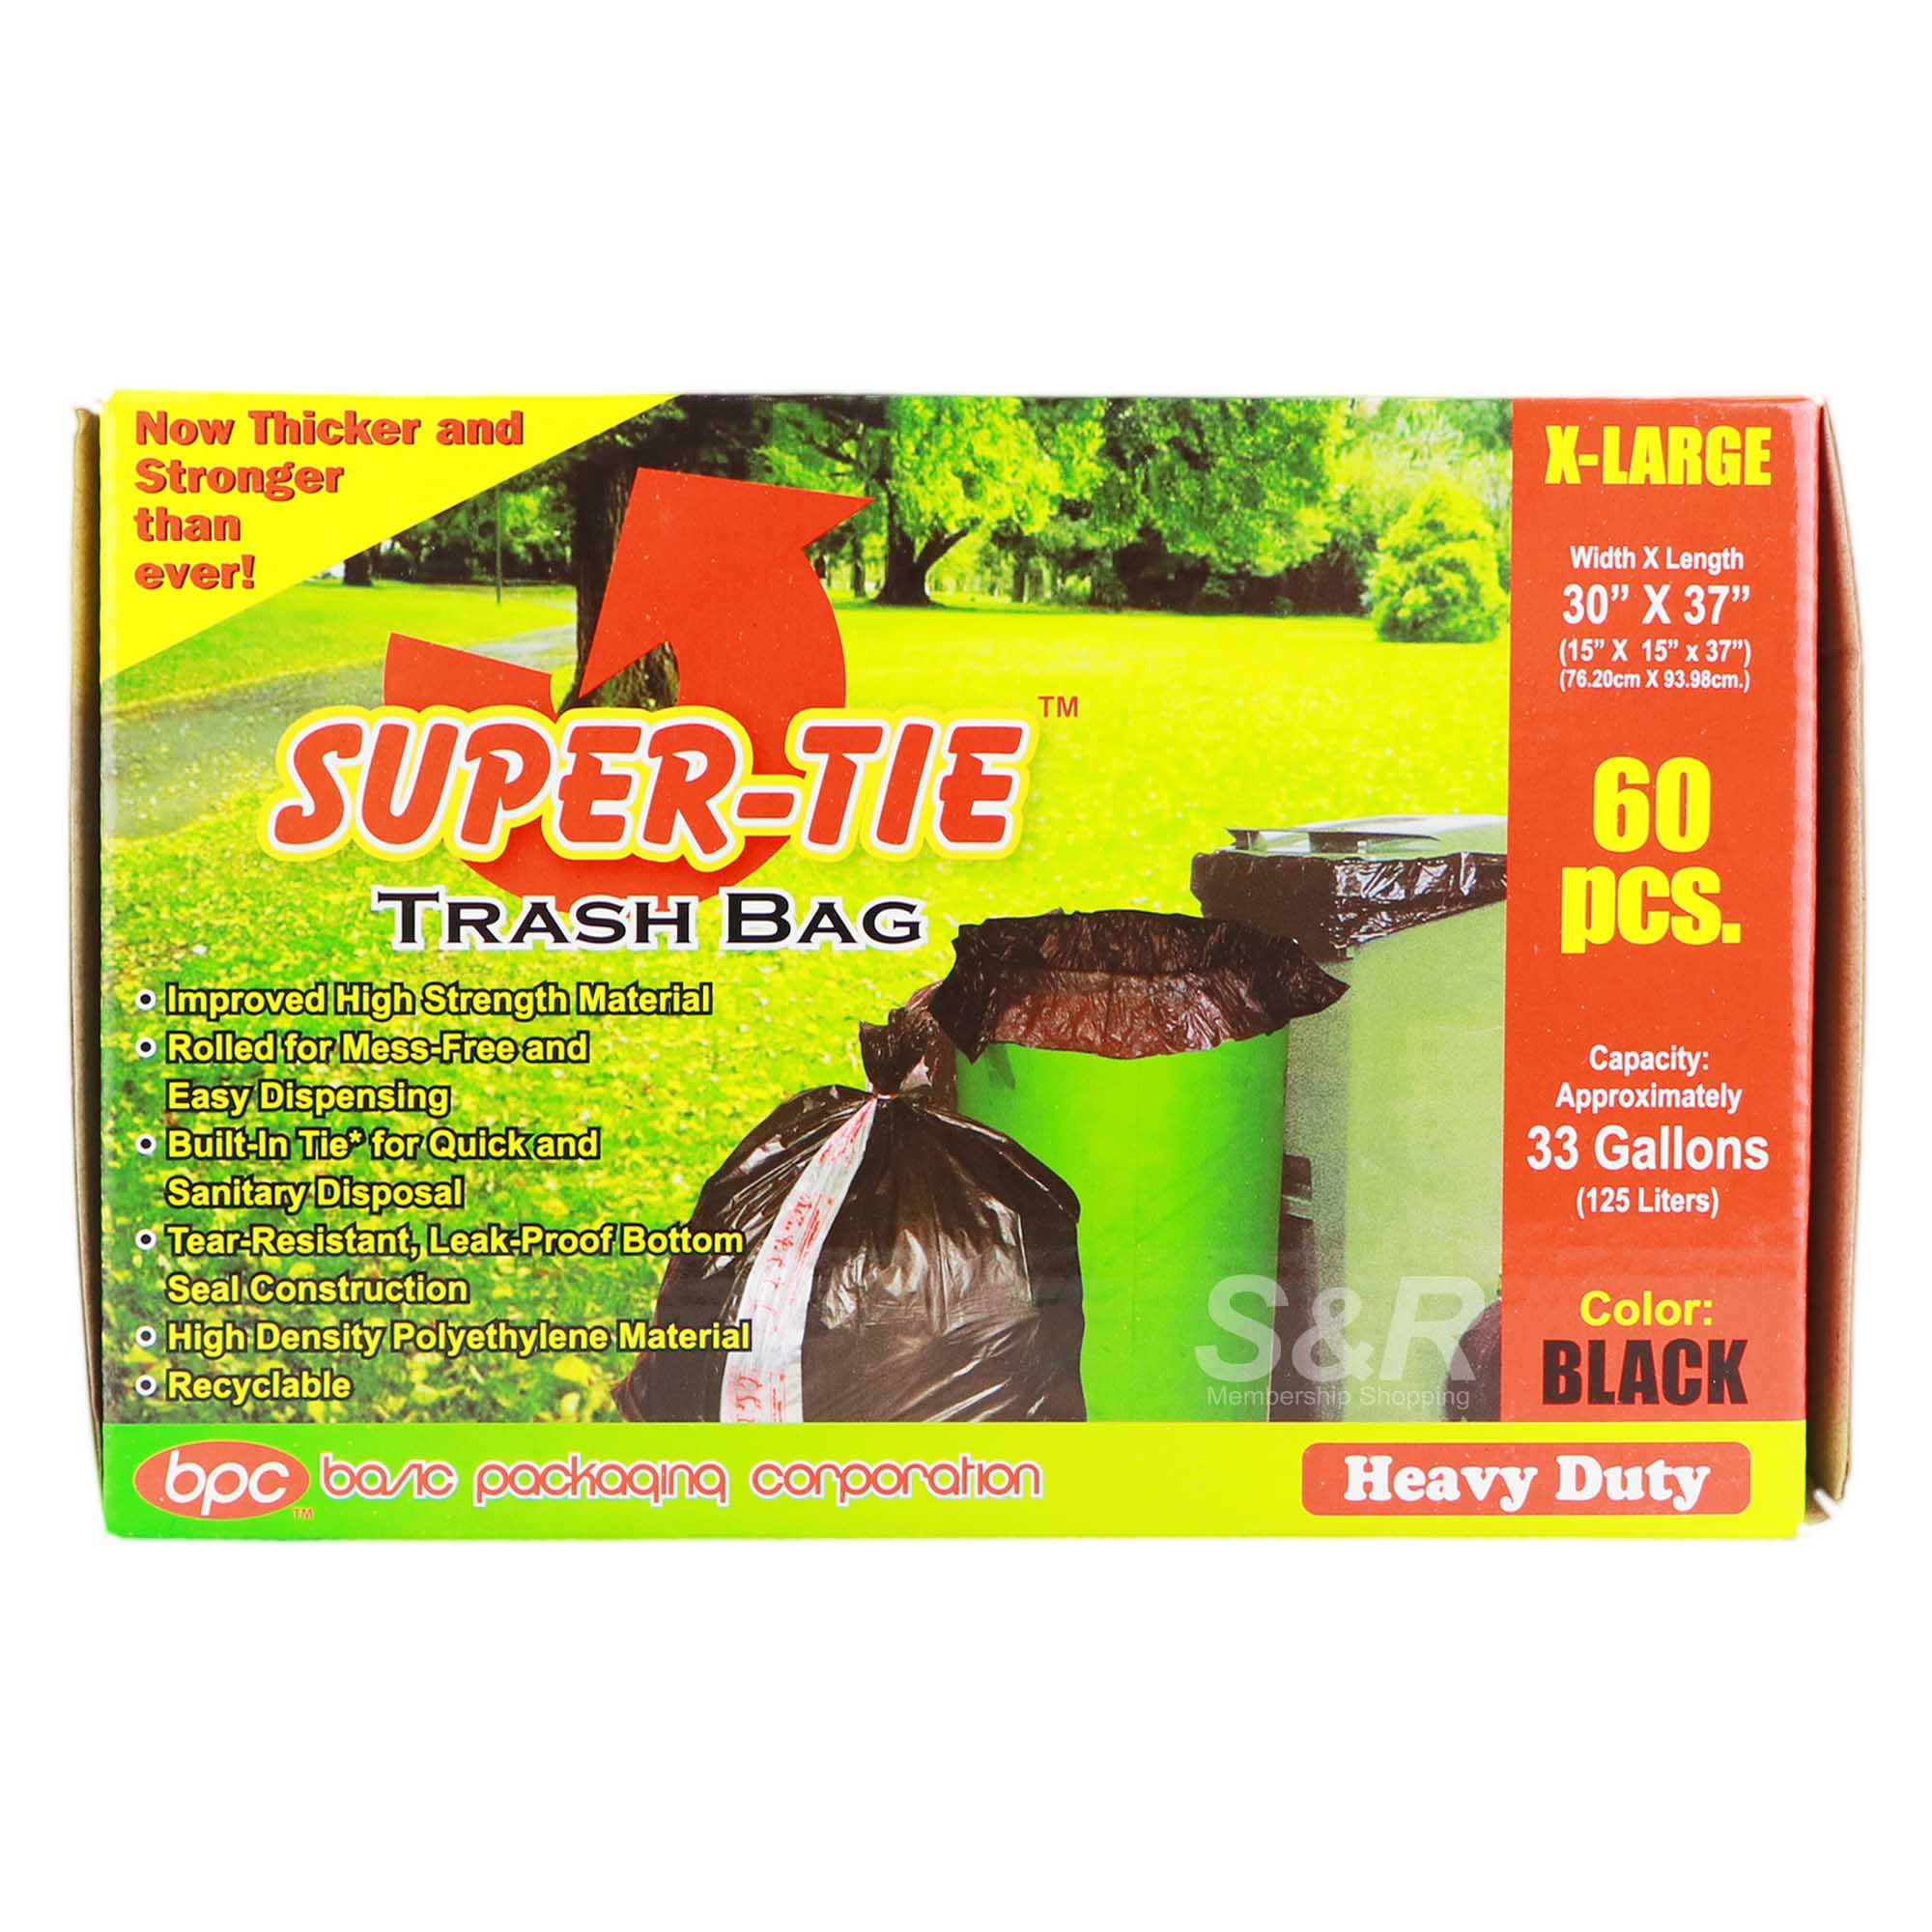 Super-Tie Trash Bag XL 60 pcs